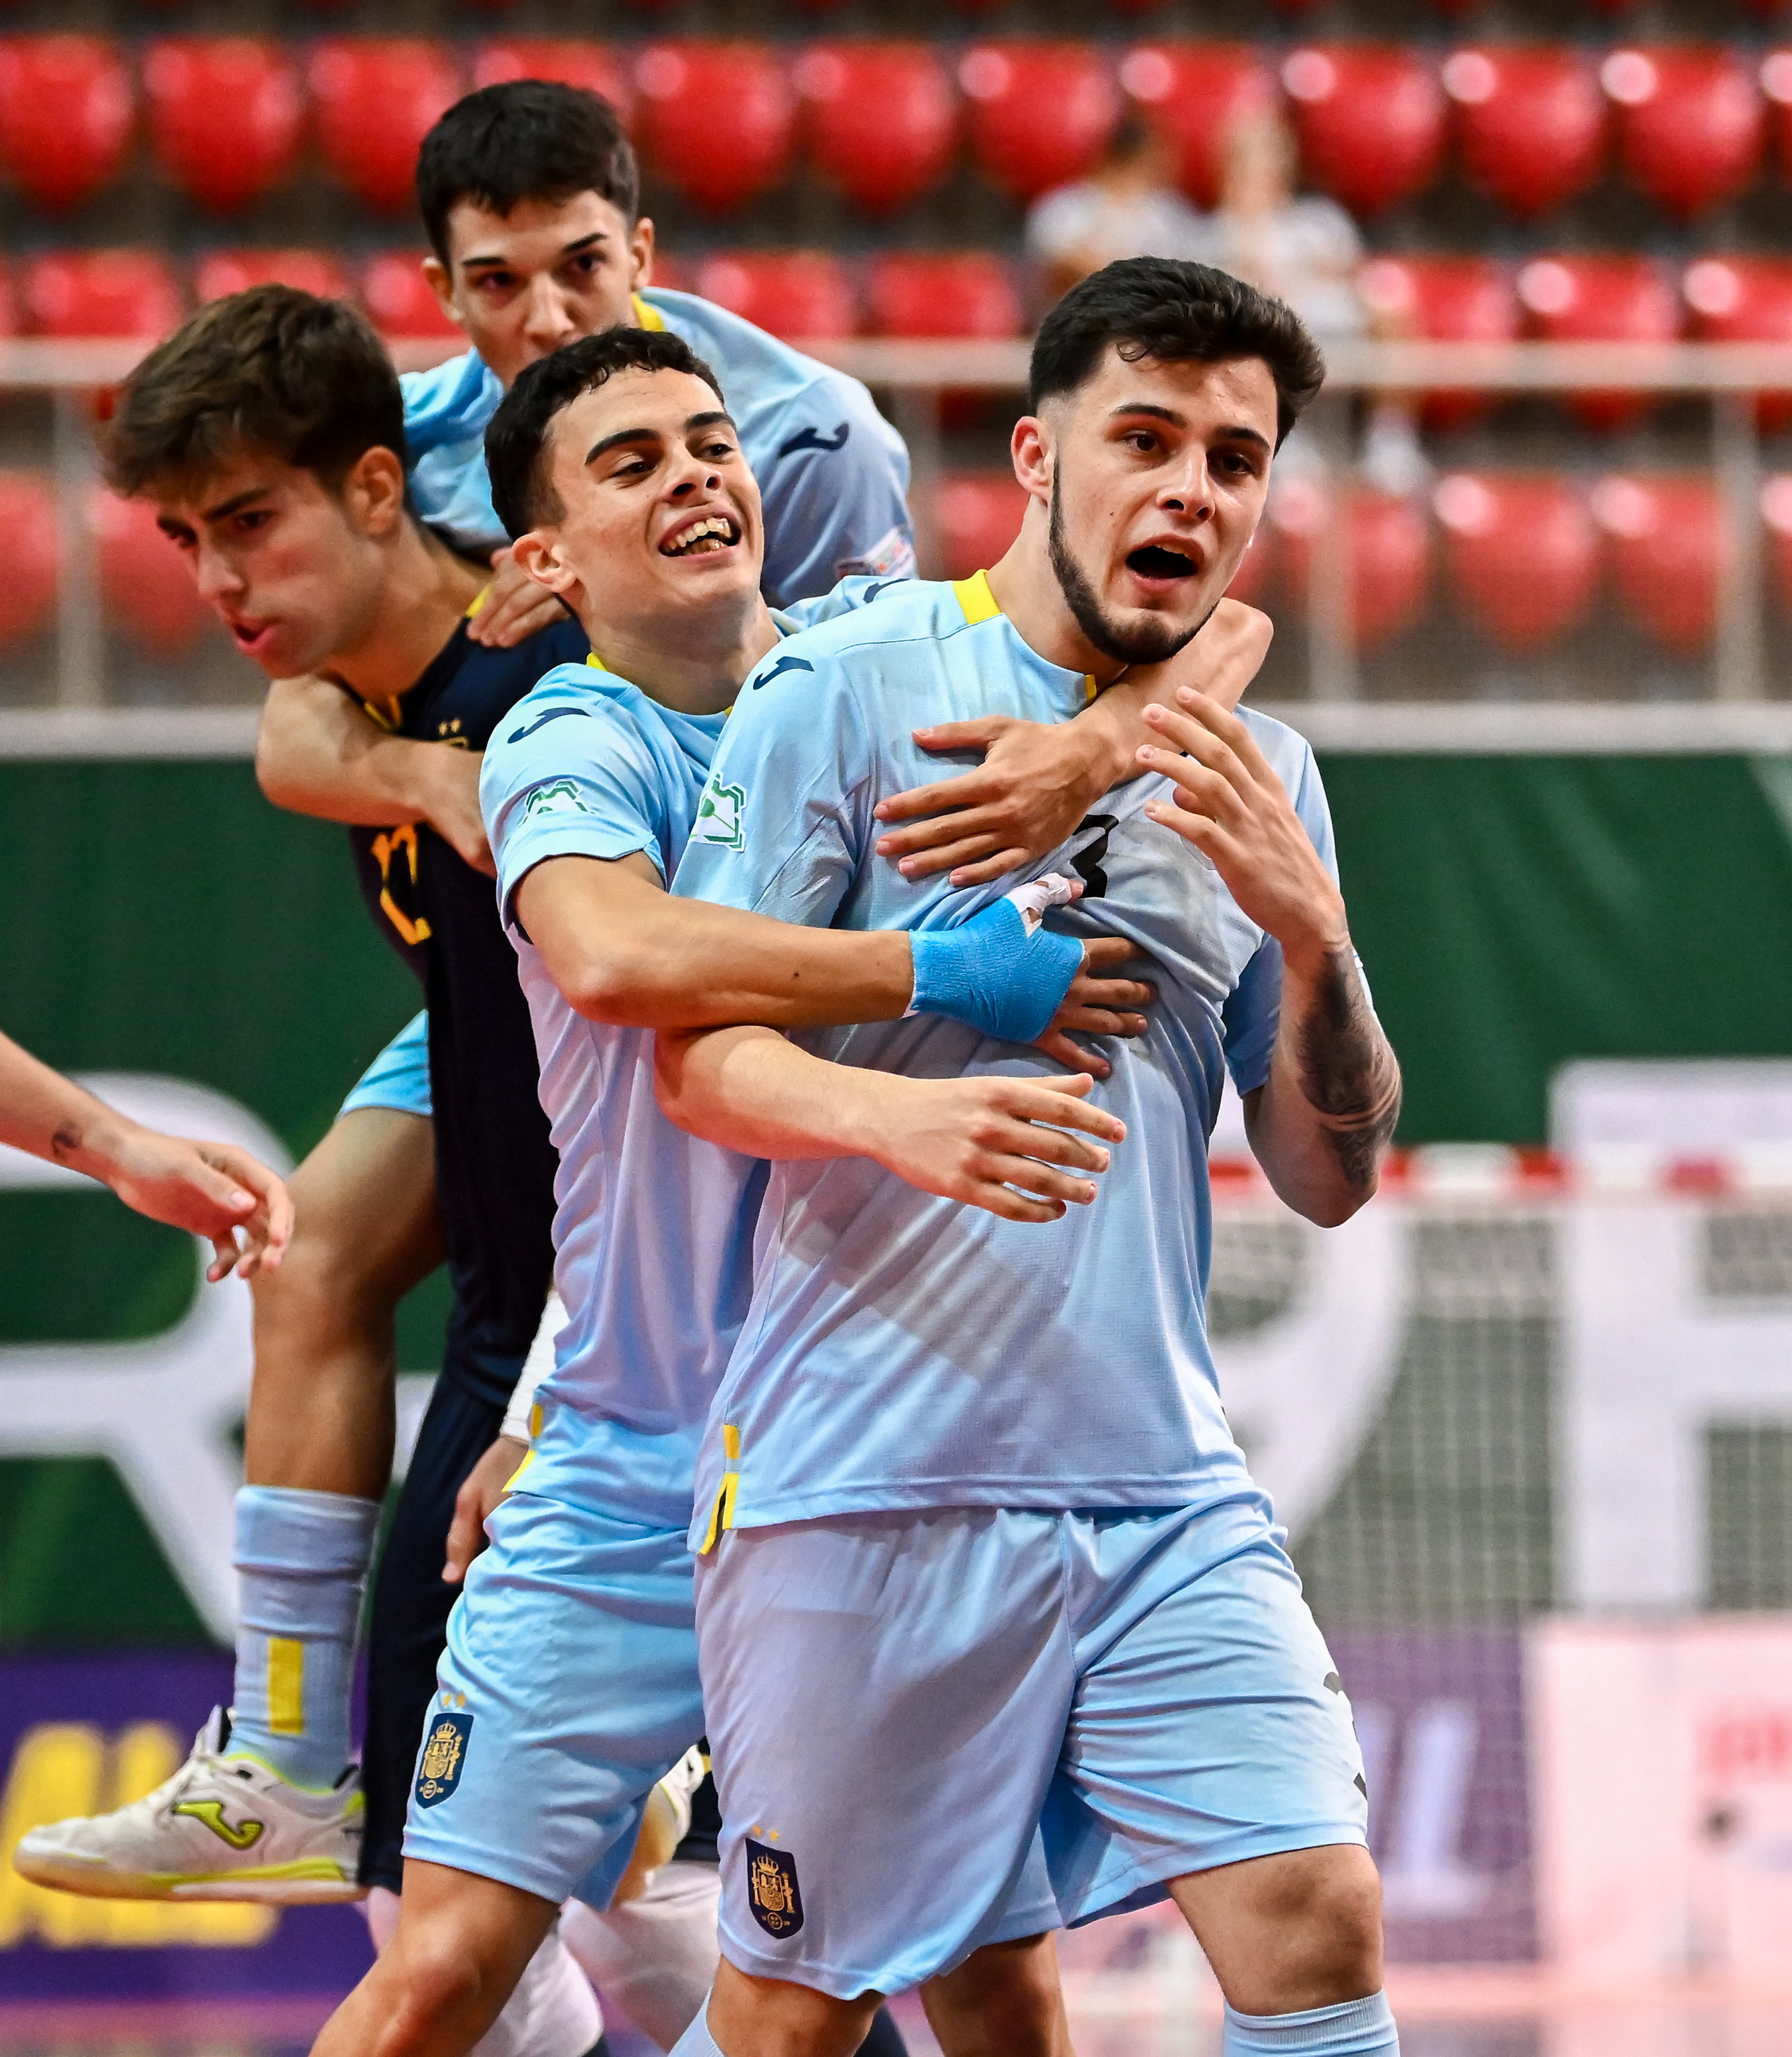 De 0-2 para 6-2: Portugal faz reviravolta fantástica e sagra-se campeão  europeu de sub-19 pela 1.ª vez - Futsal - SAPO Desporto